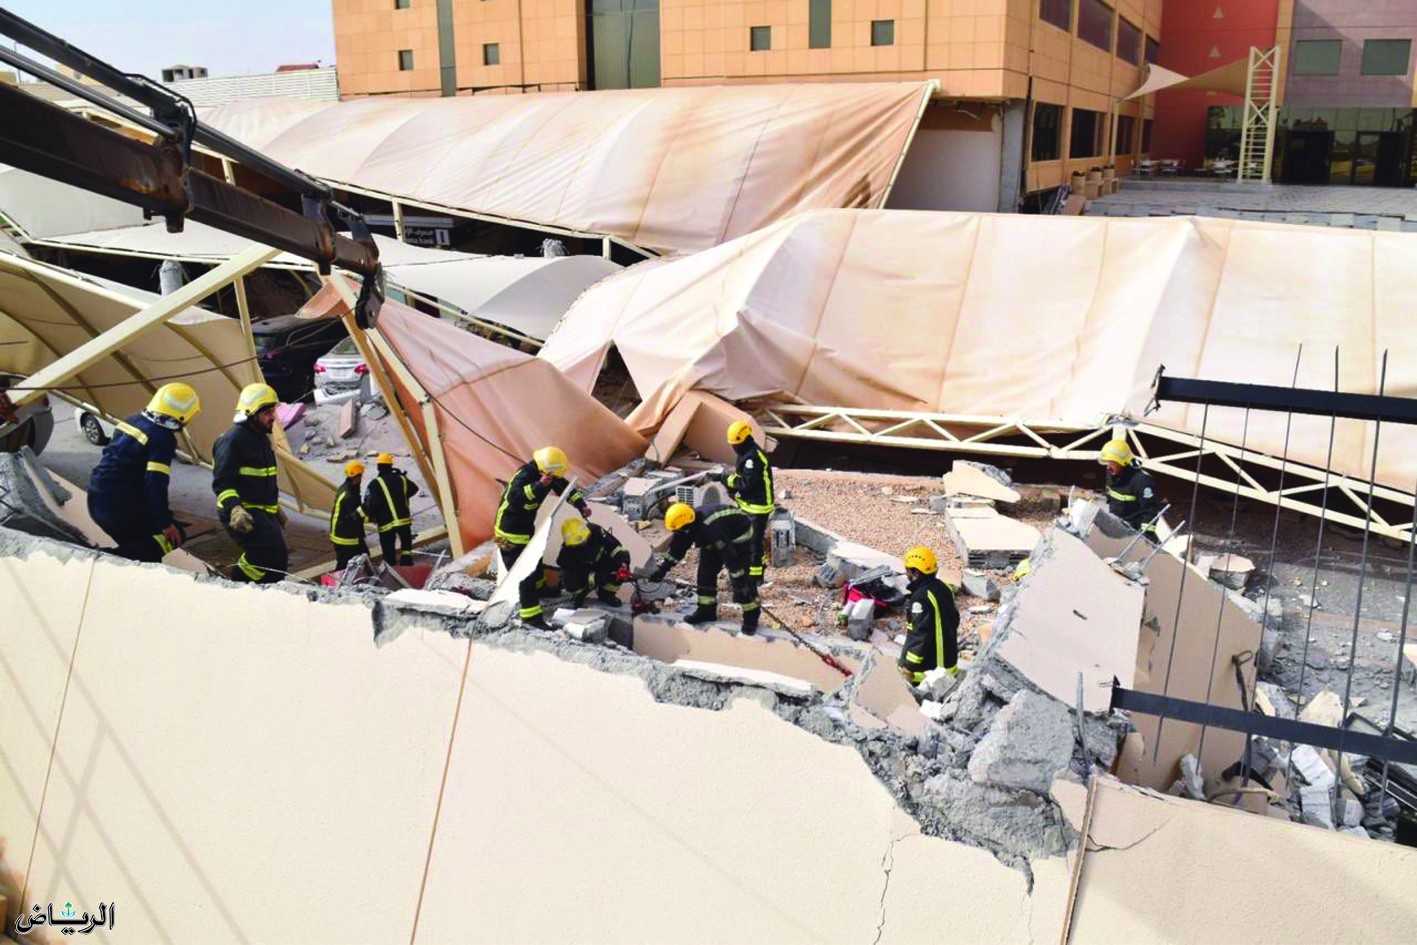 “الدفاع المدني” حادث مبني الجامعة يتسبب في إصابة 13 شخص ووفاة شخصين